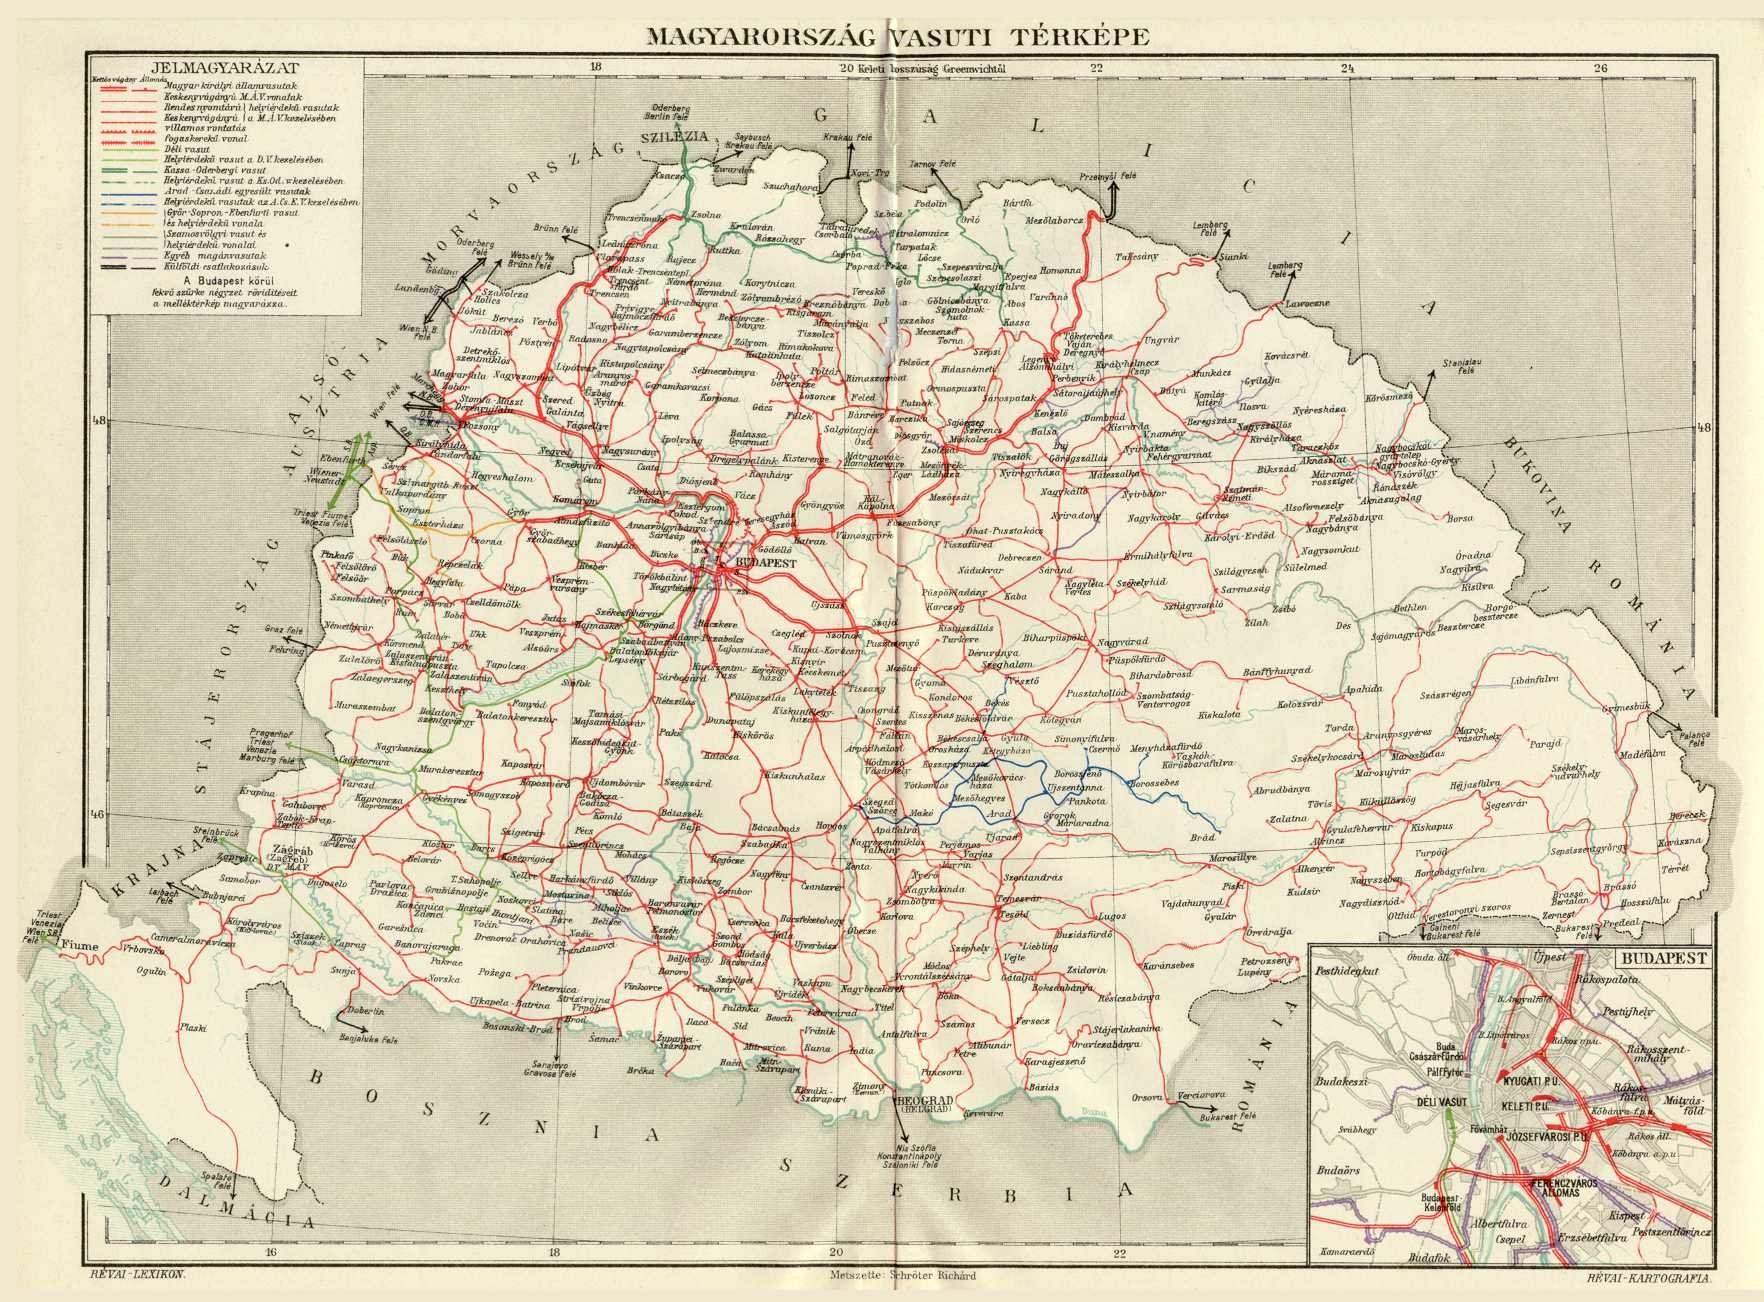 A történelmi Magyarország vasúthálózata 1918-ban, két évvel a trianoni döntés előtt (kép forrása: Revai Kartographia/Wikipedia)